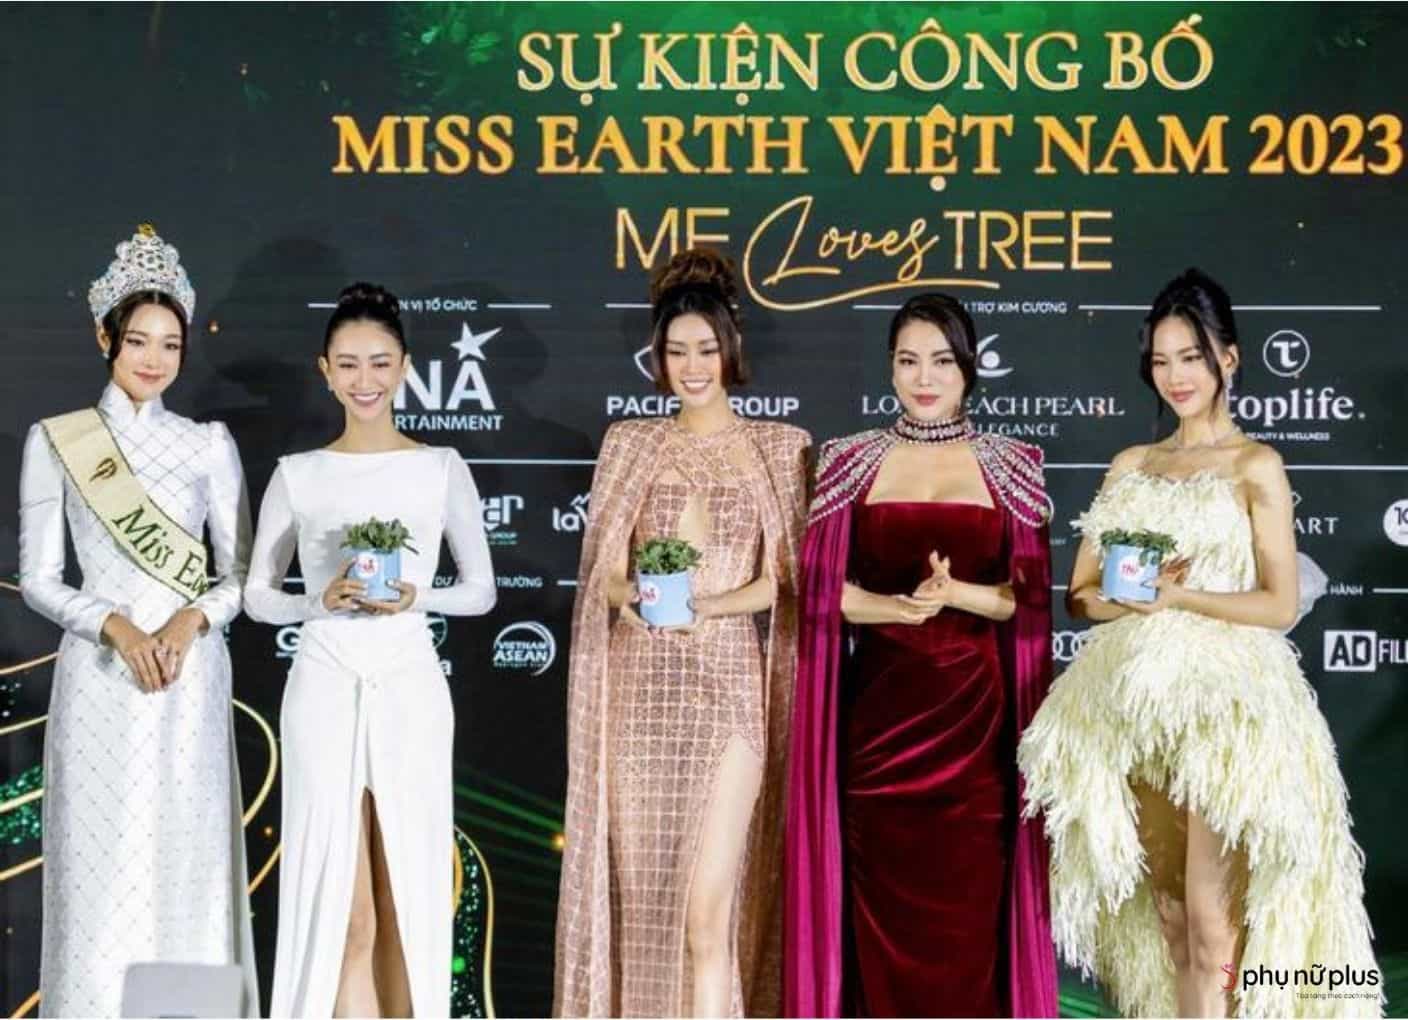 Chủ tịch Trương Ngọc Ánh chụp ảnh cùng Miss Earth 2022 và 3 huấn luyện viên của cuộc thi Miss Earth Vietnam 2023